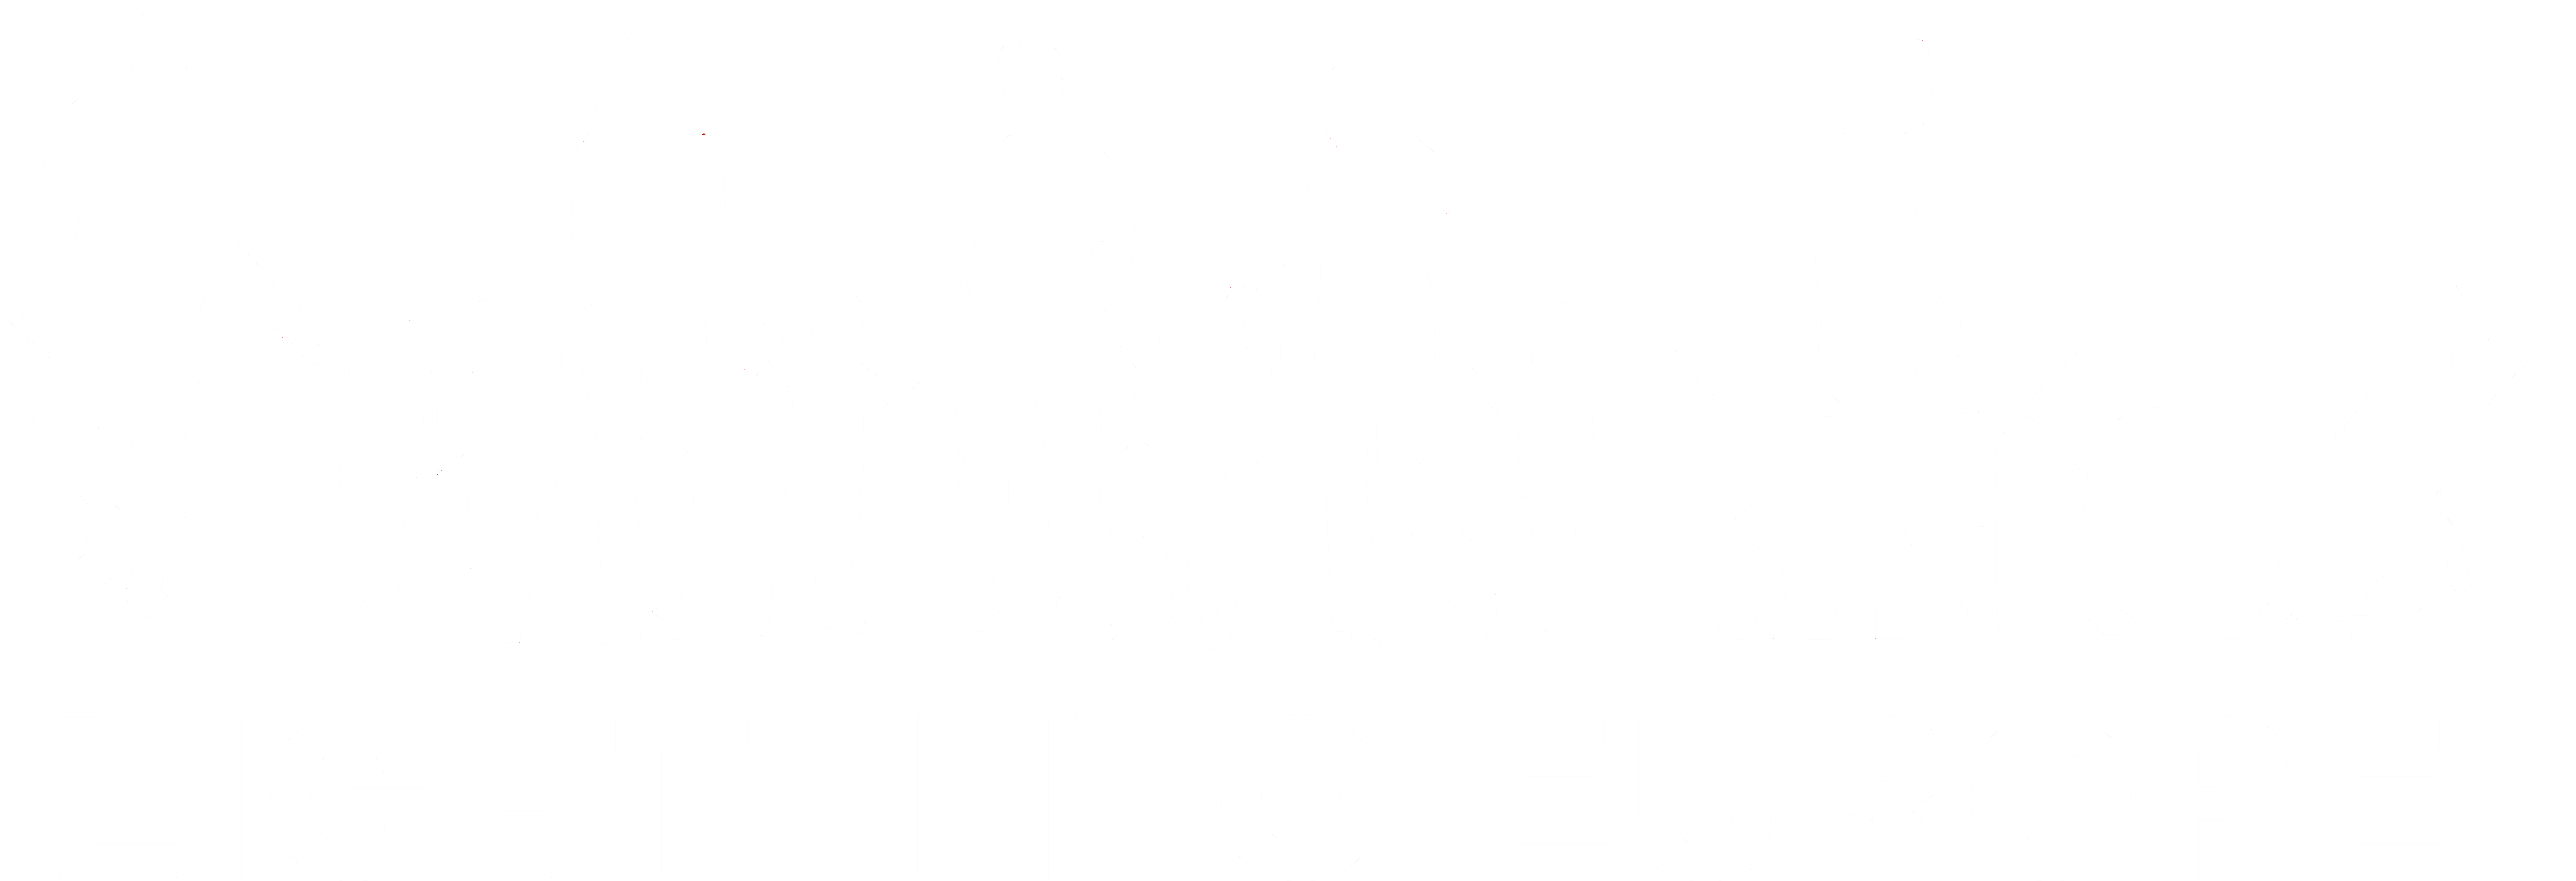 Light Into Europe logo